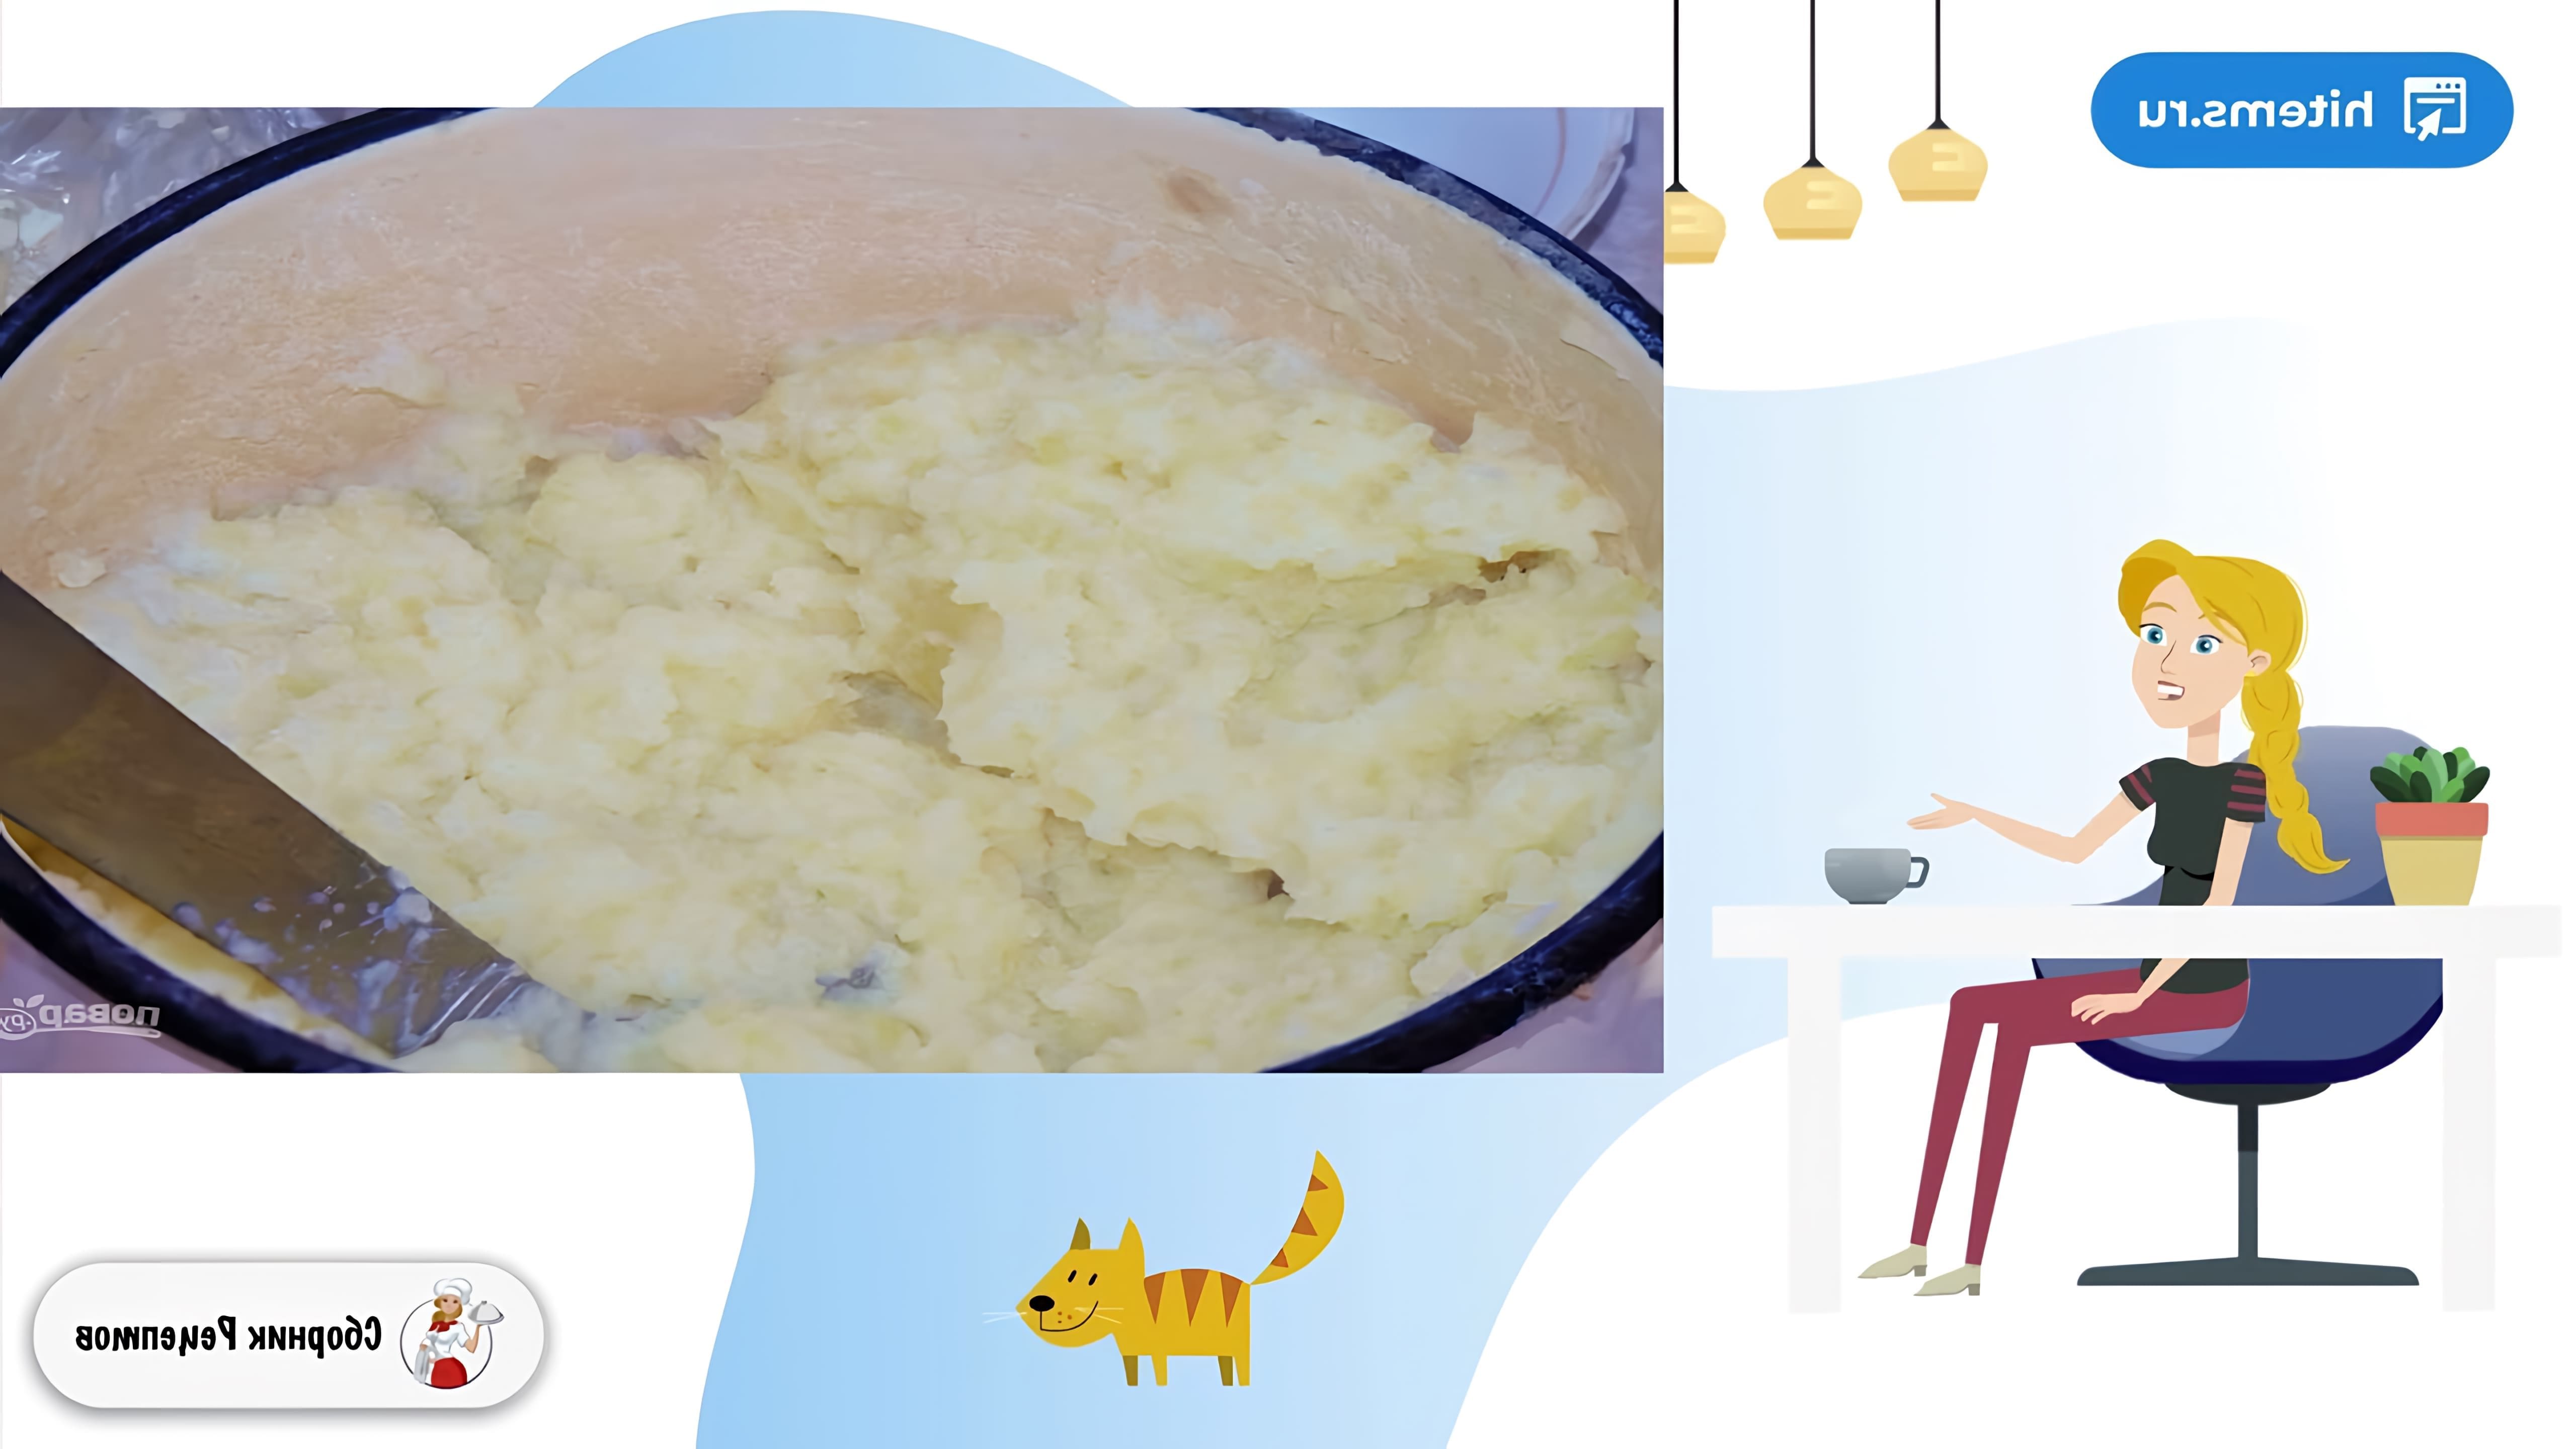 В этом видео демонстрируется рецепт приготовления диетического картофельного пюре